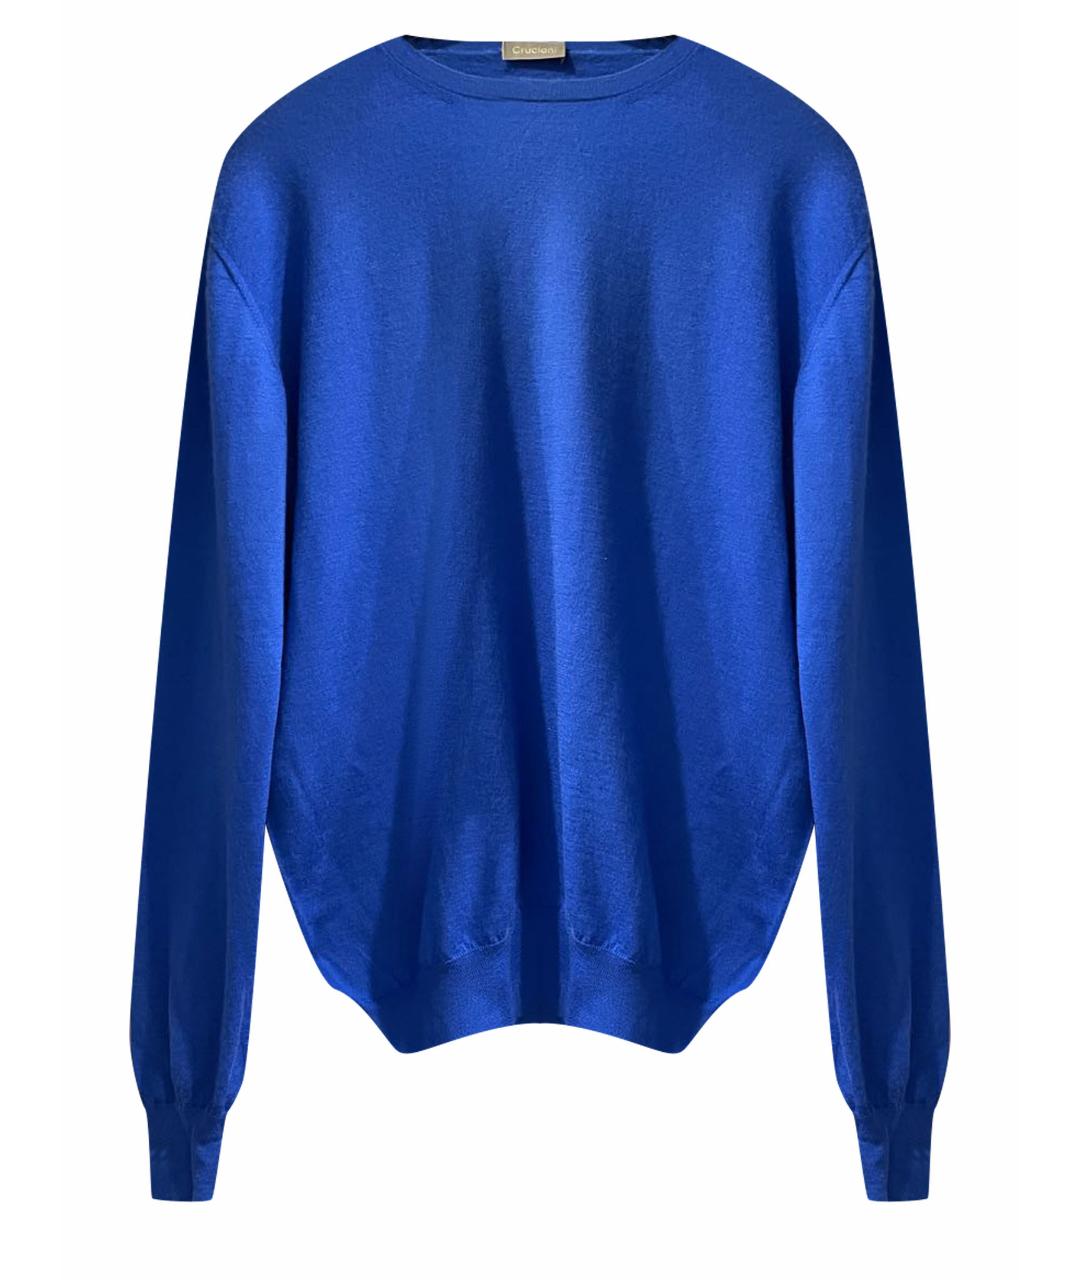 CRUCIANI Синий кашемировый джемпер / свитер, фото 1